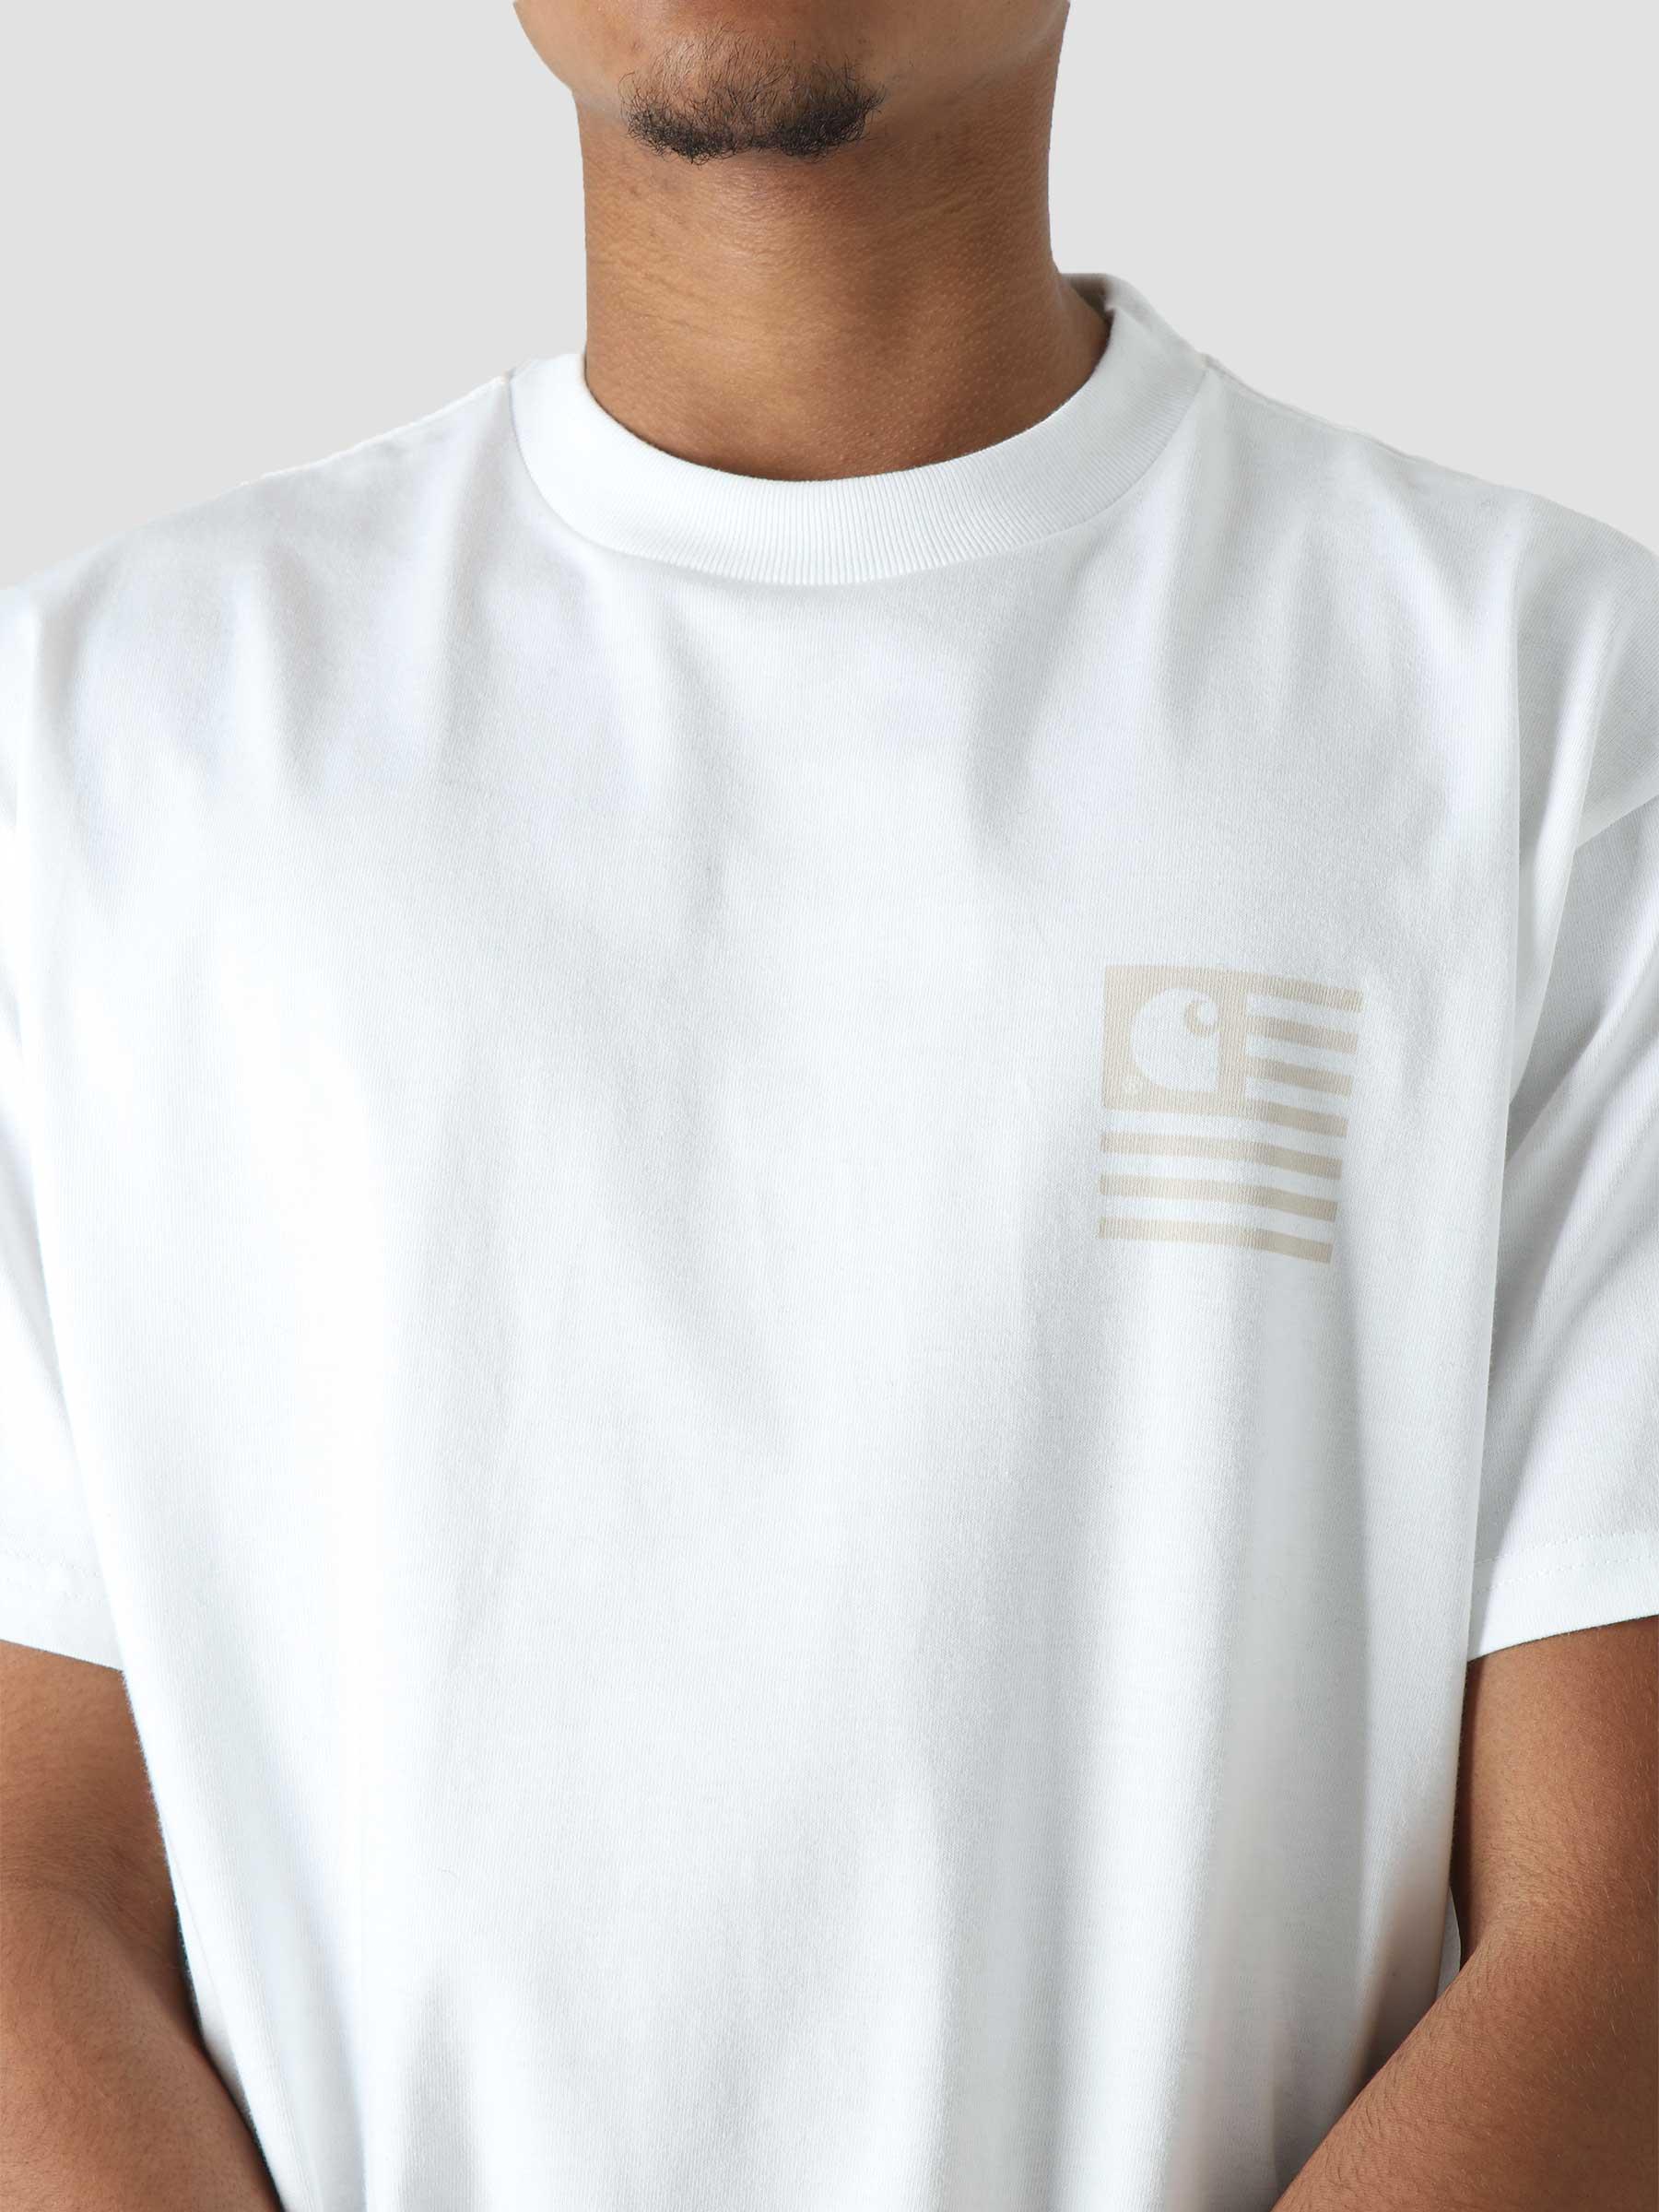 S/S Medley State T-Shirt White I030169-02XX